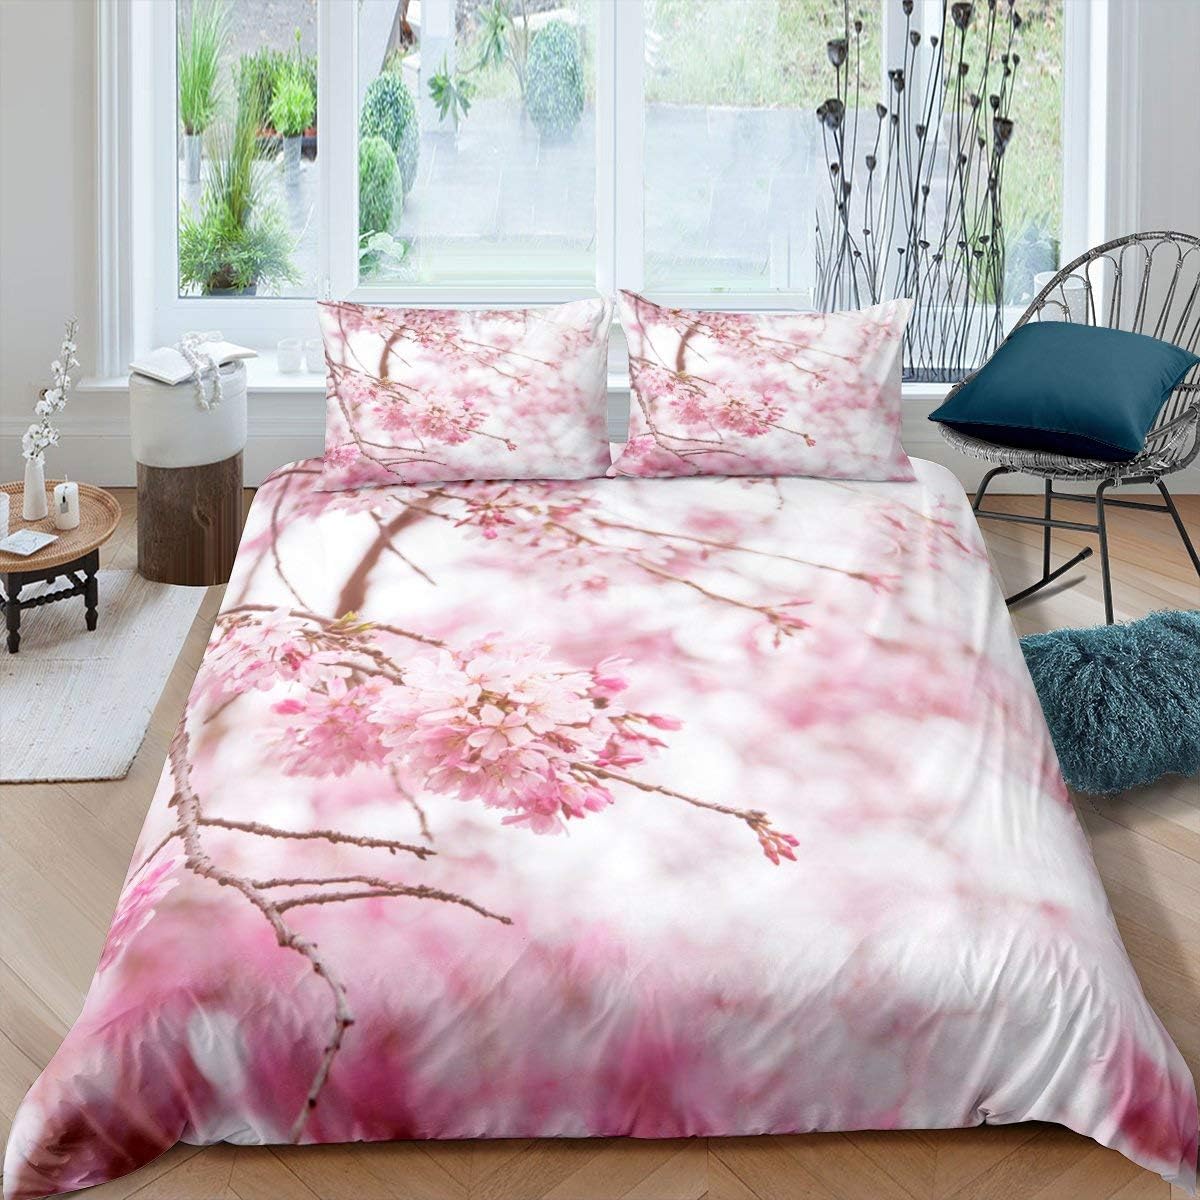 Funda de almohada de seda pura con flor de cerezo